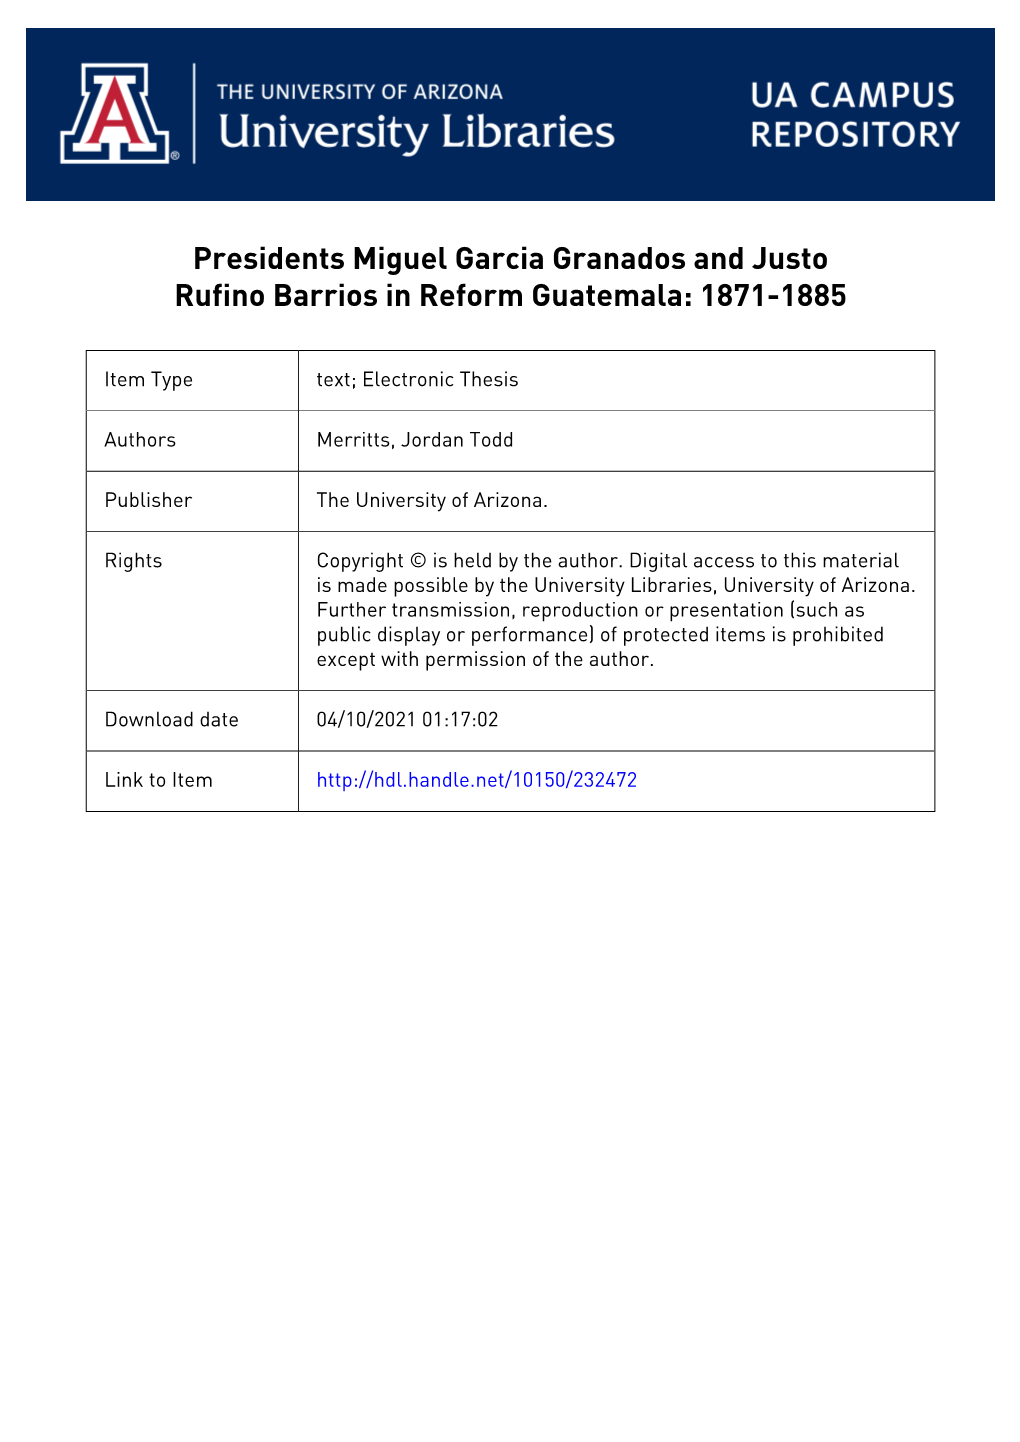 Presidents Miguel Garcia Granados and Justo Rufino Barrios in Reform Guatemala: 1871-1885